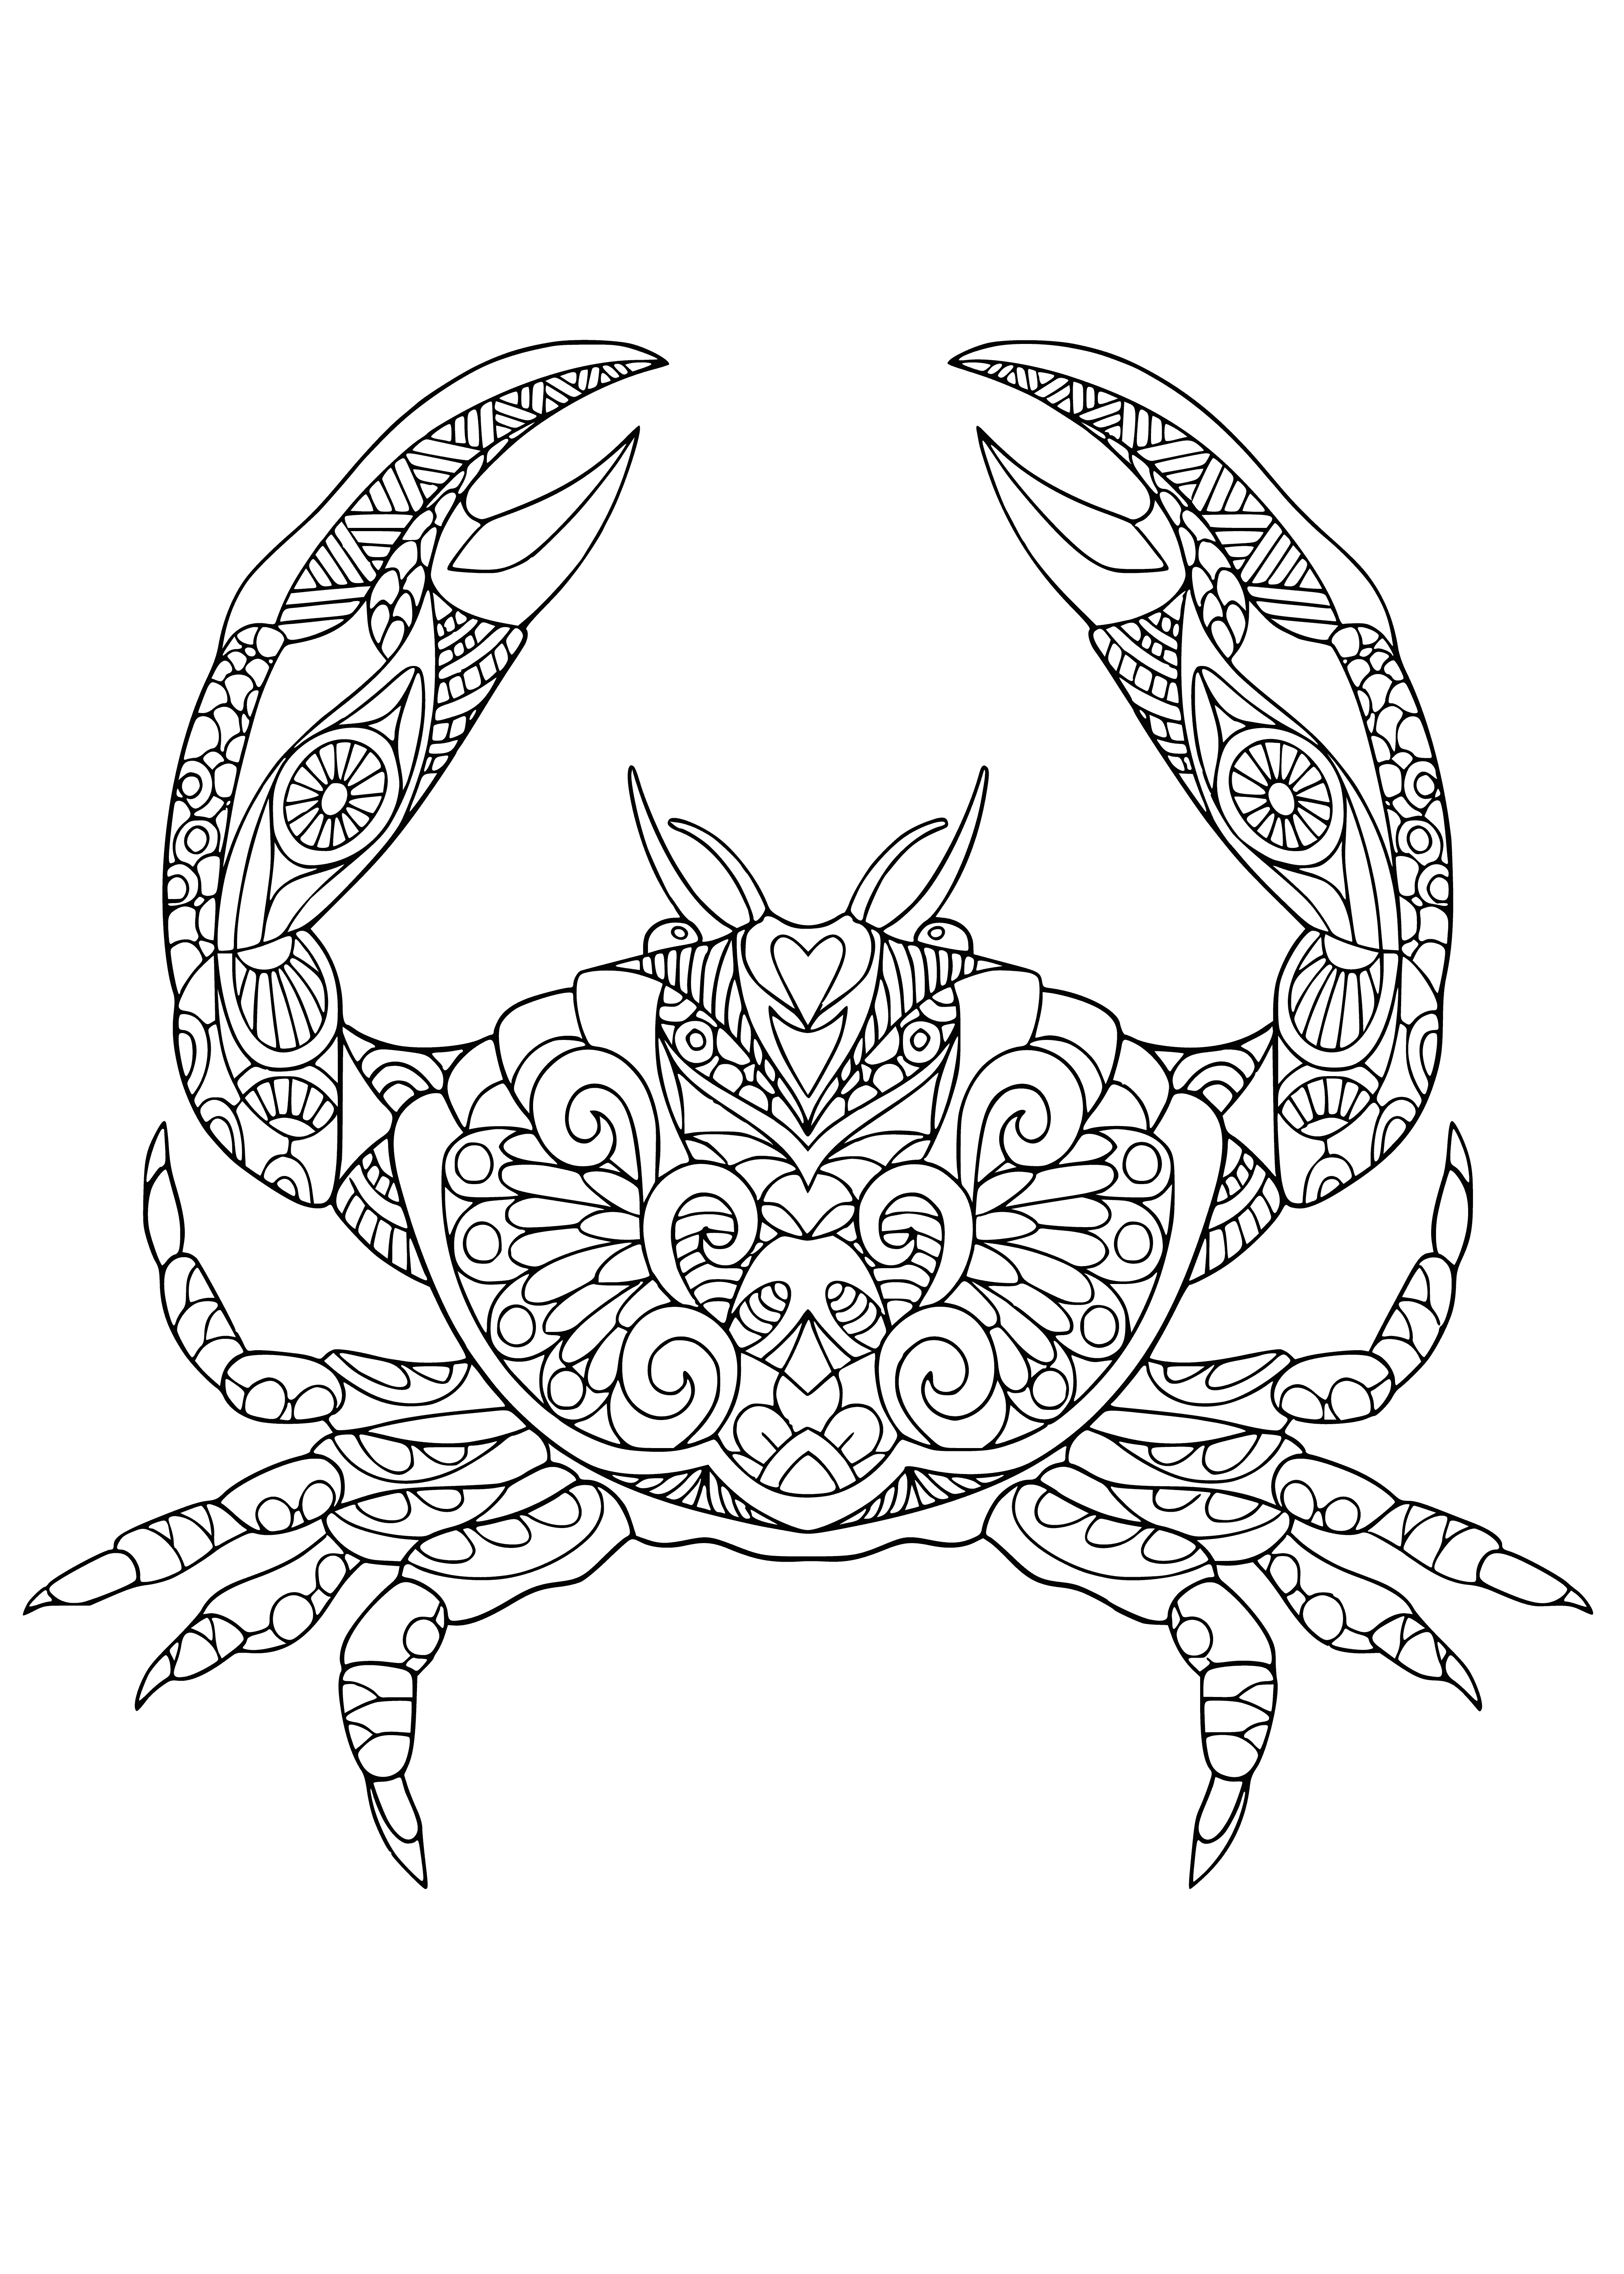 Sea crab coloring page